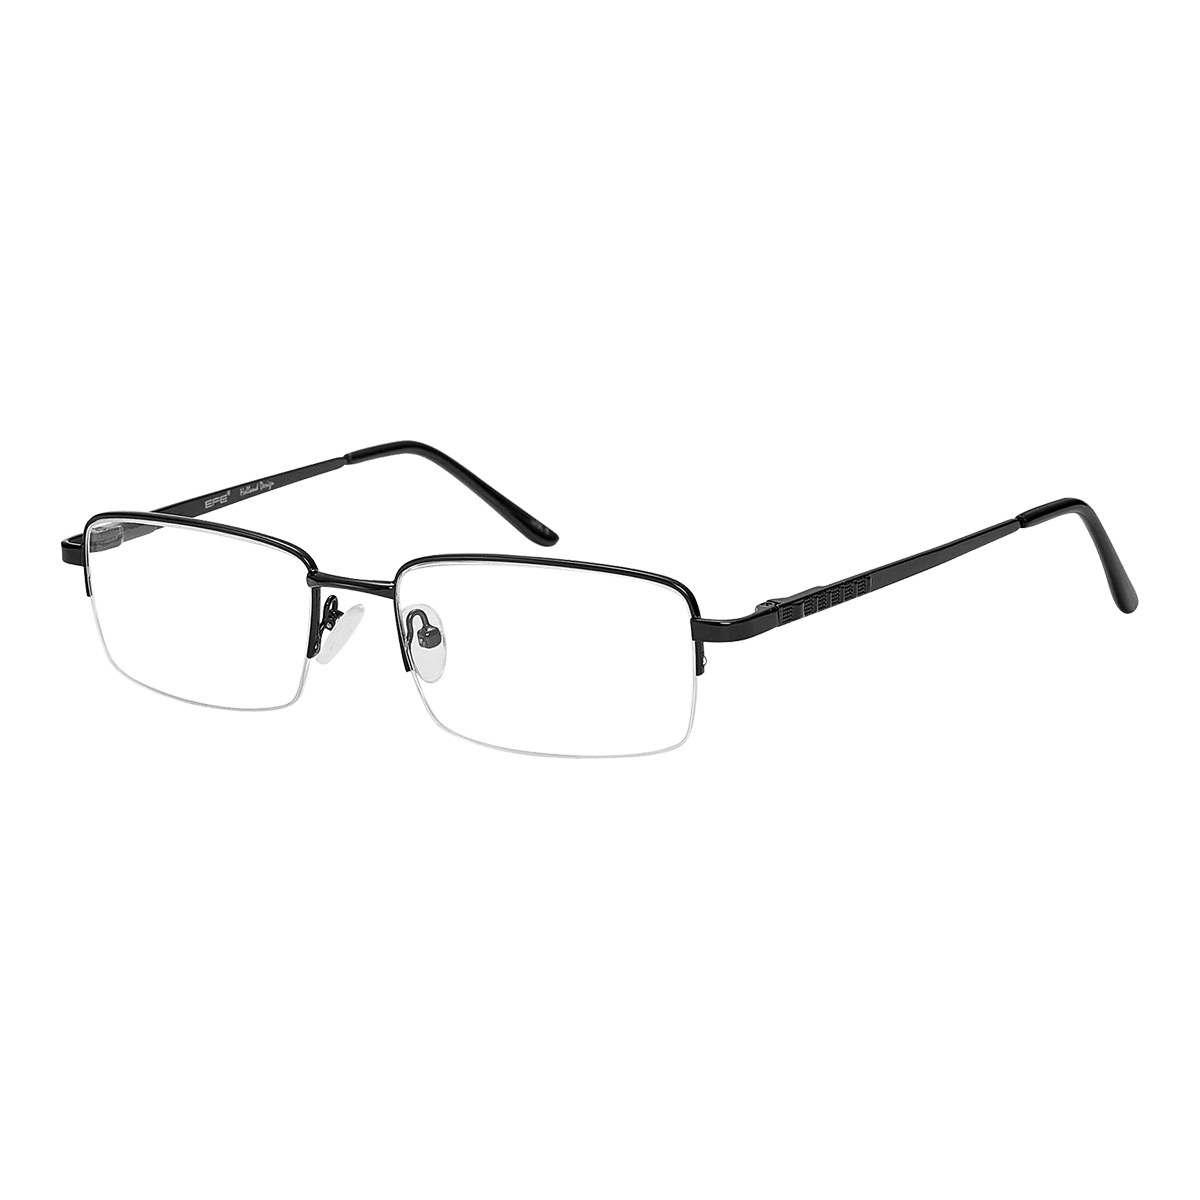 Madge - Rectangle Black Reading Glasses for Men